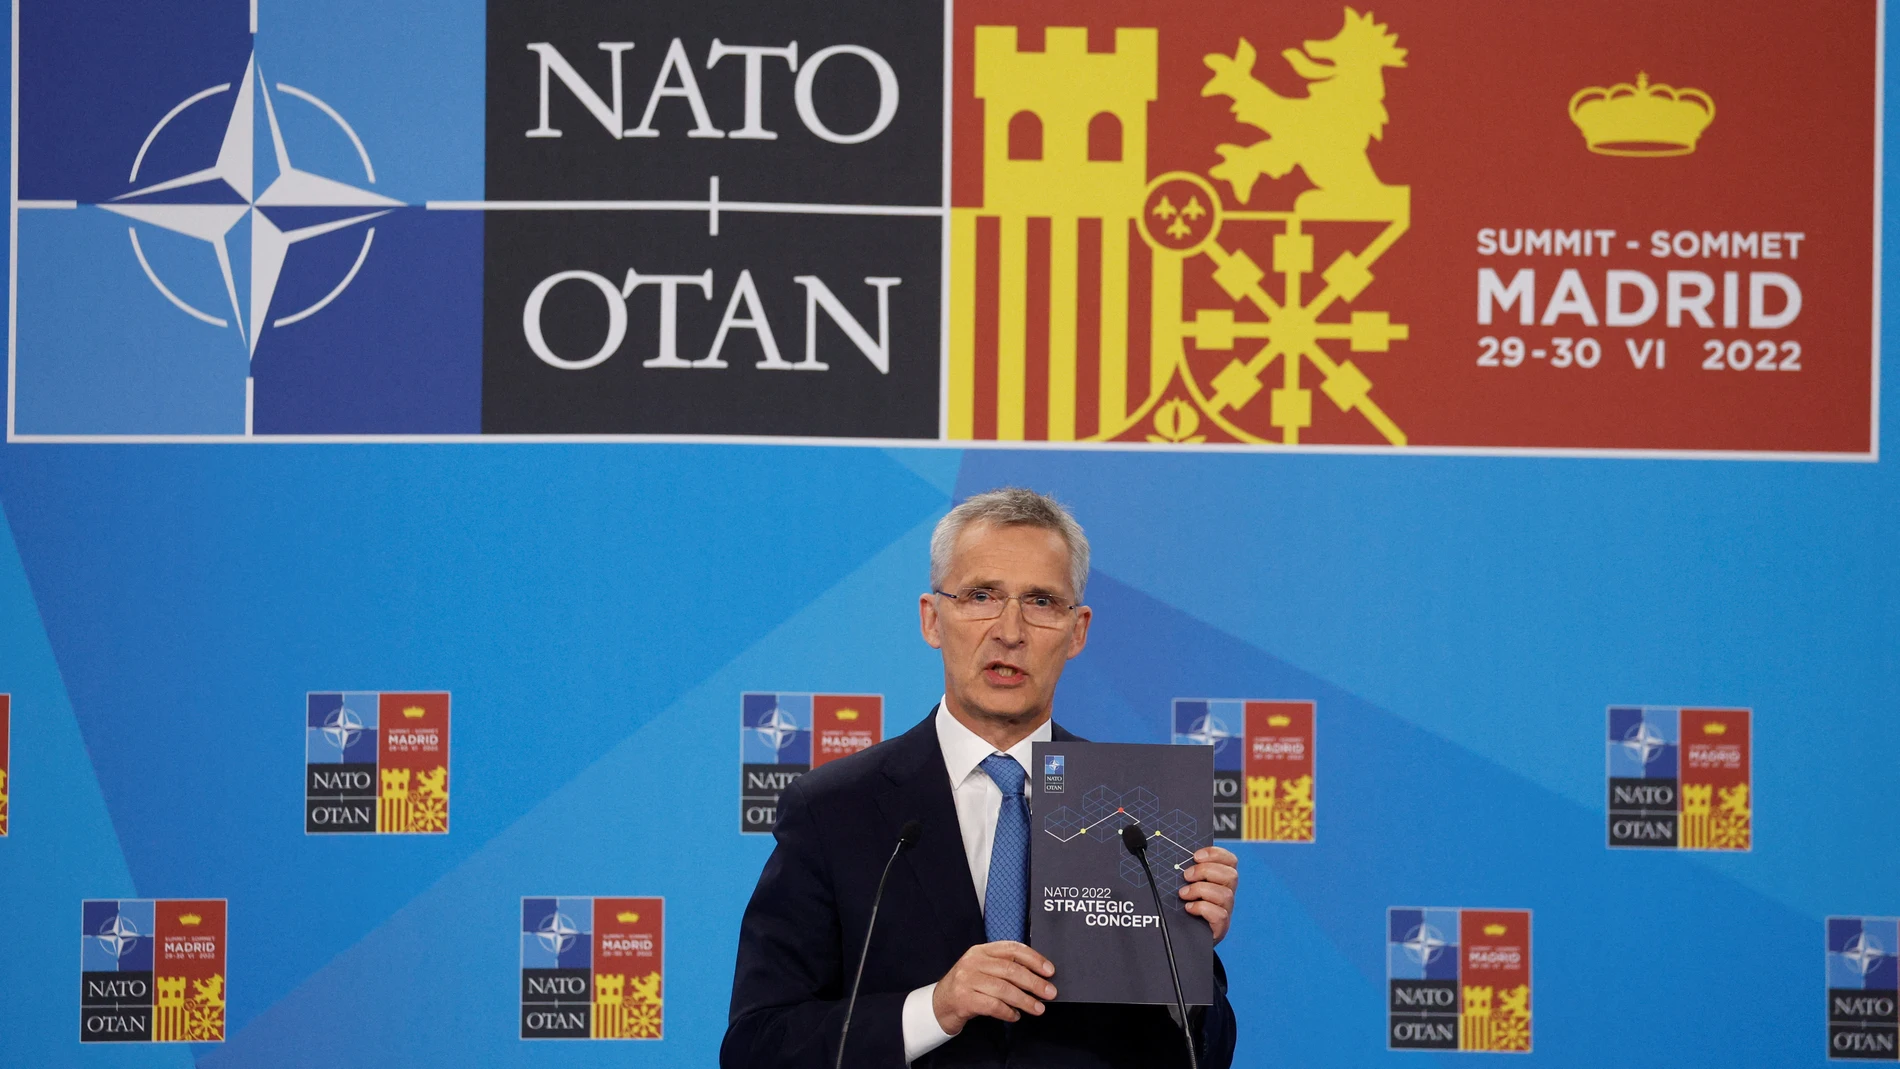 El secretario general de la OTAN, Jens Stoltenberg, muestra el nuevo concepto estratégico a la Alianza Atlántica